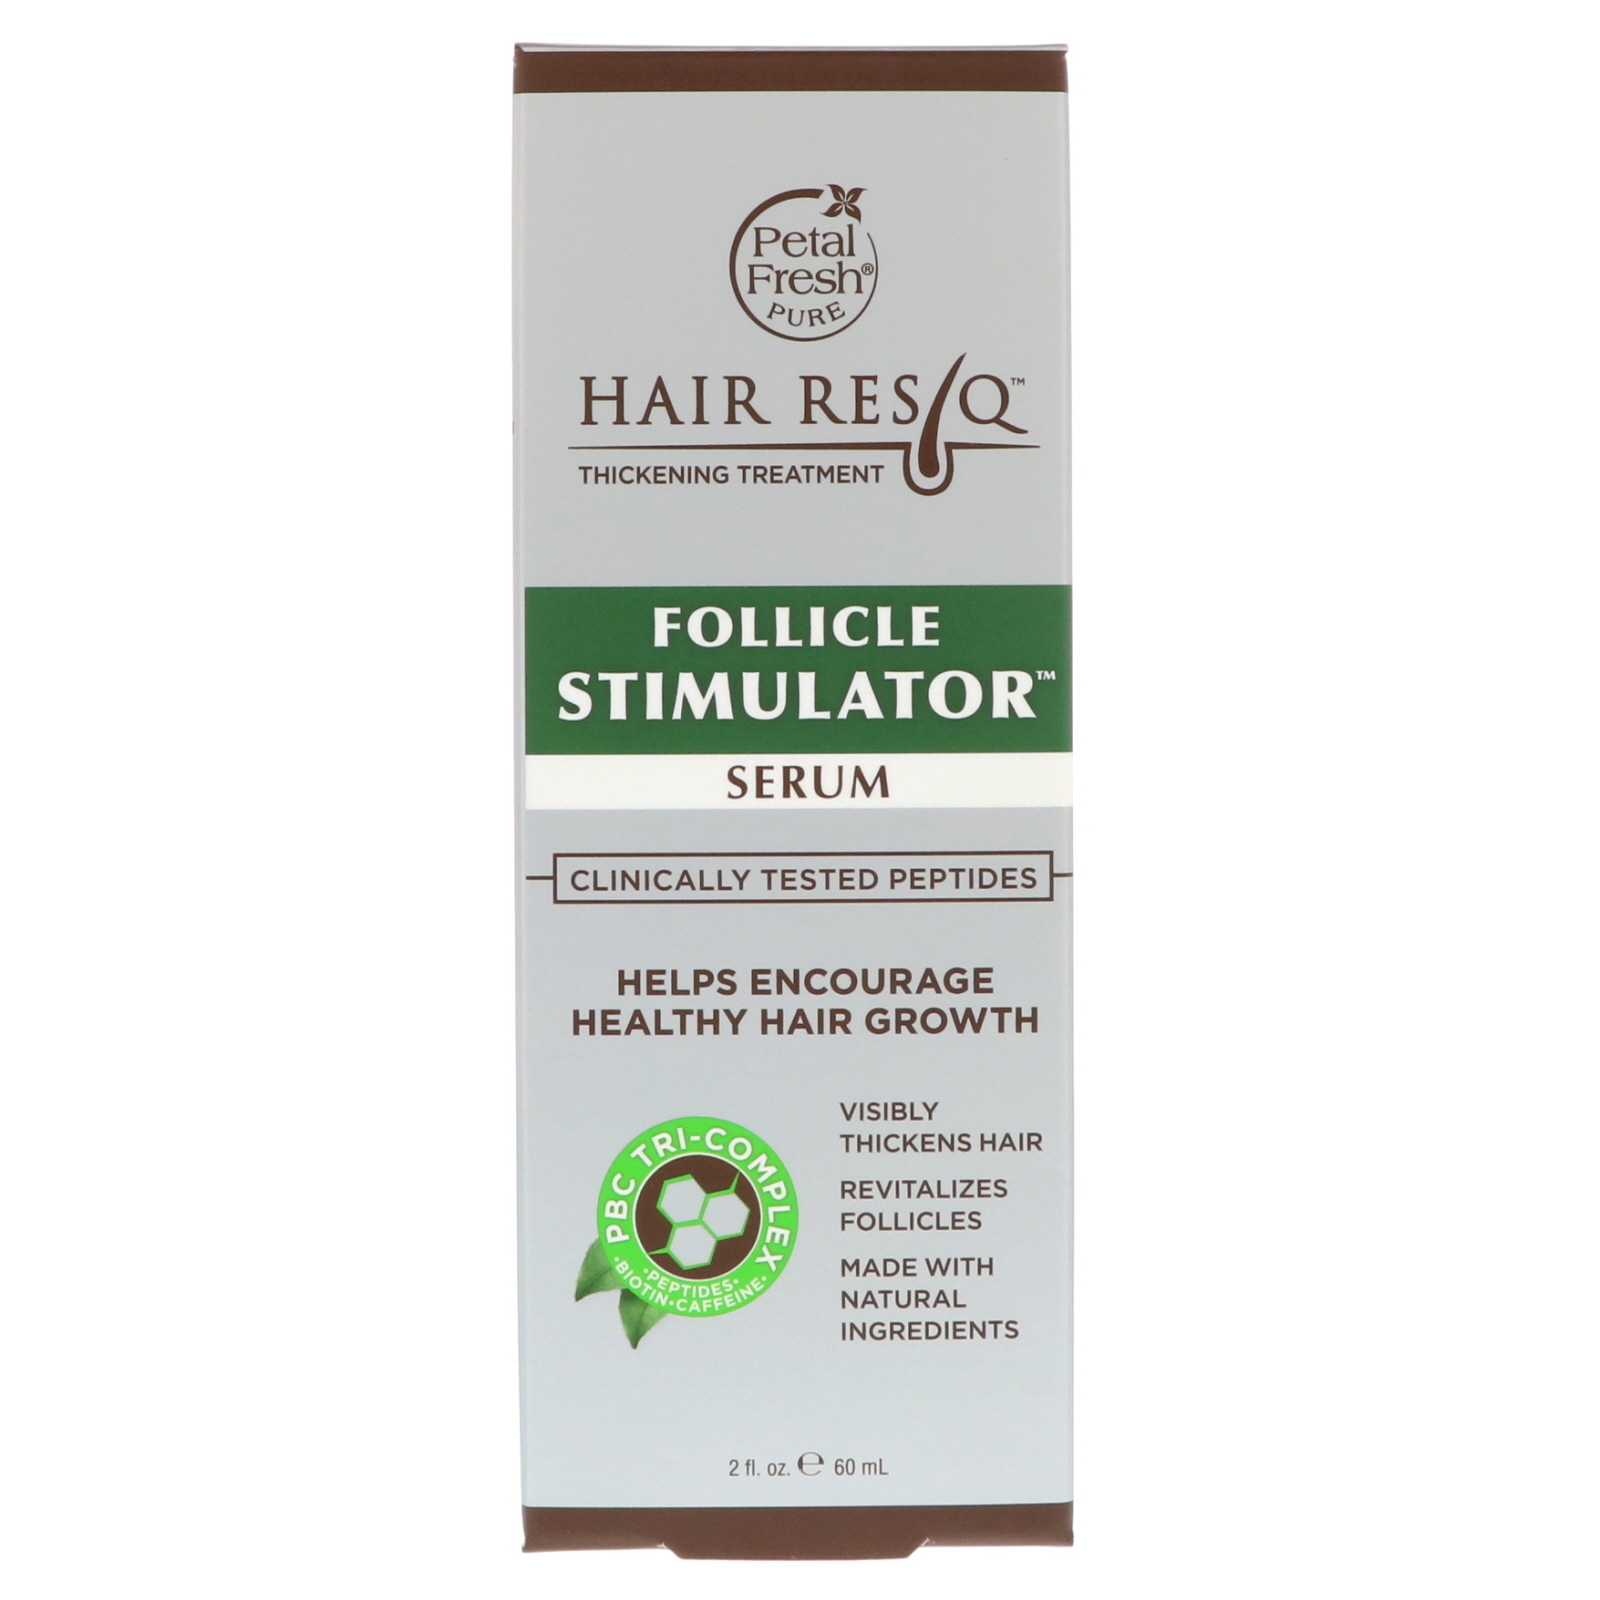 Petal Fresh, Hair ResQ, Лечение для густоты волос, Сыворотка для стимуляции фолликулов, 2 ж. унц.(60 мл)